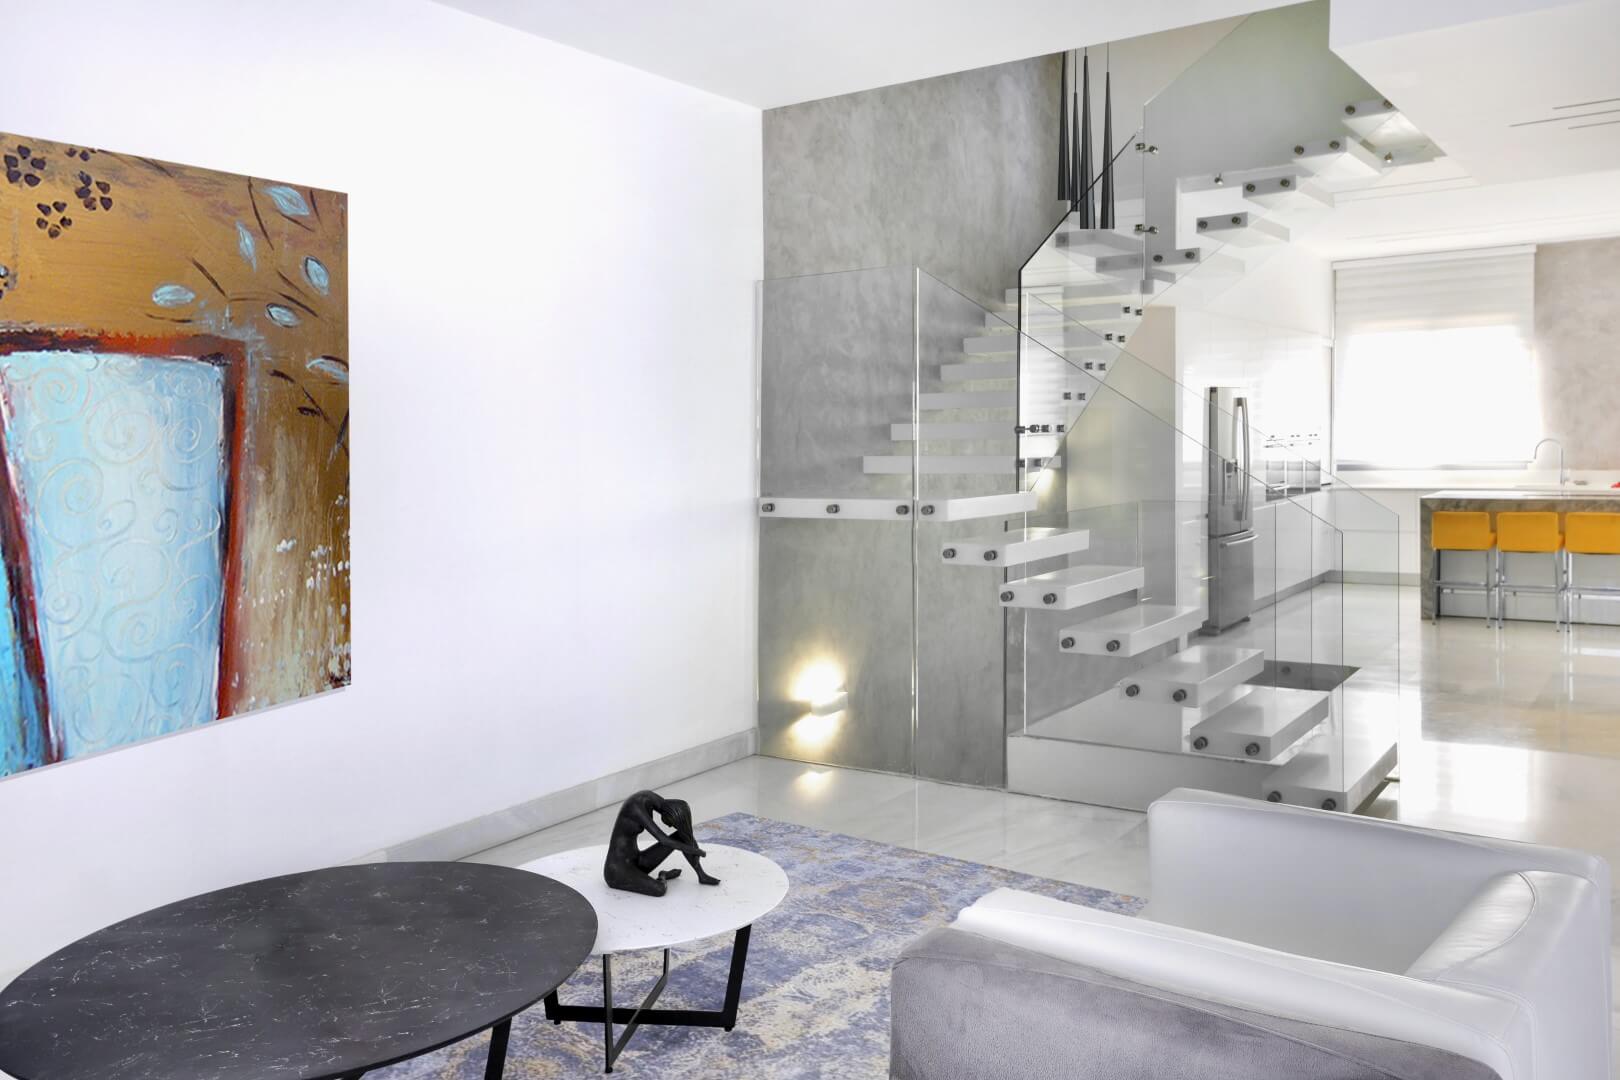 מבט צד על 3 גרמי מדרגות מרחפות מקוריאן לבן על רקע קיר בגוון אפור בסלון